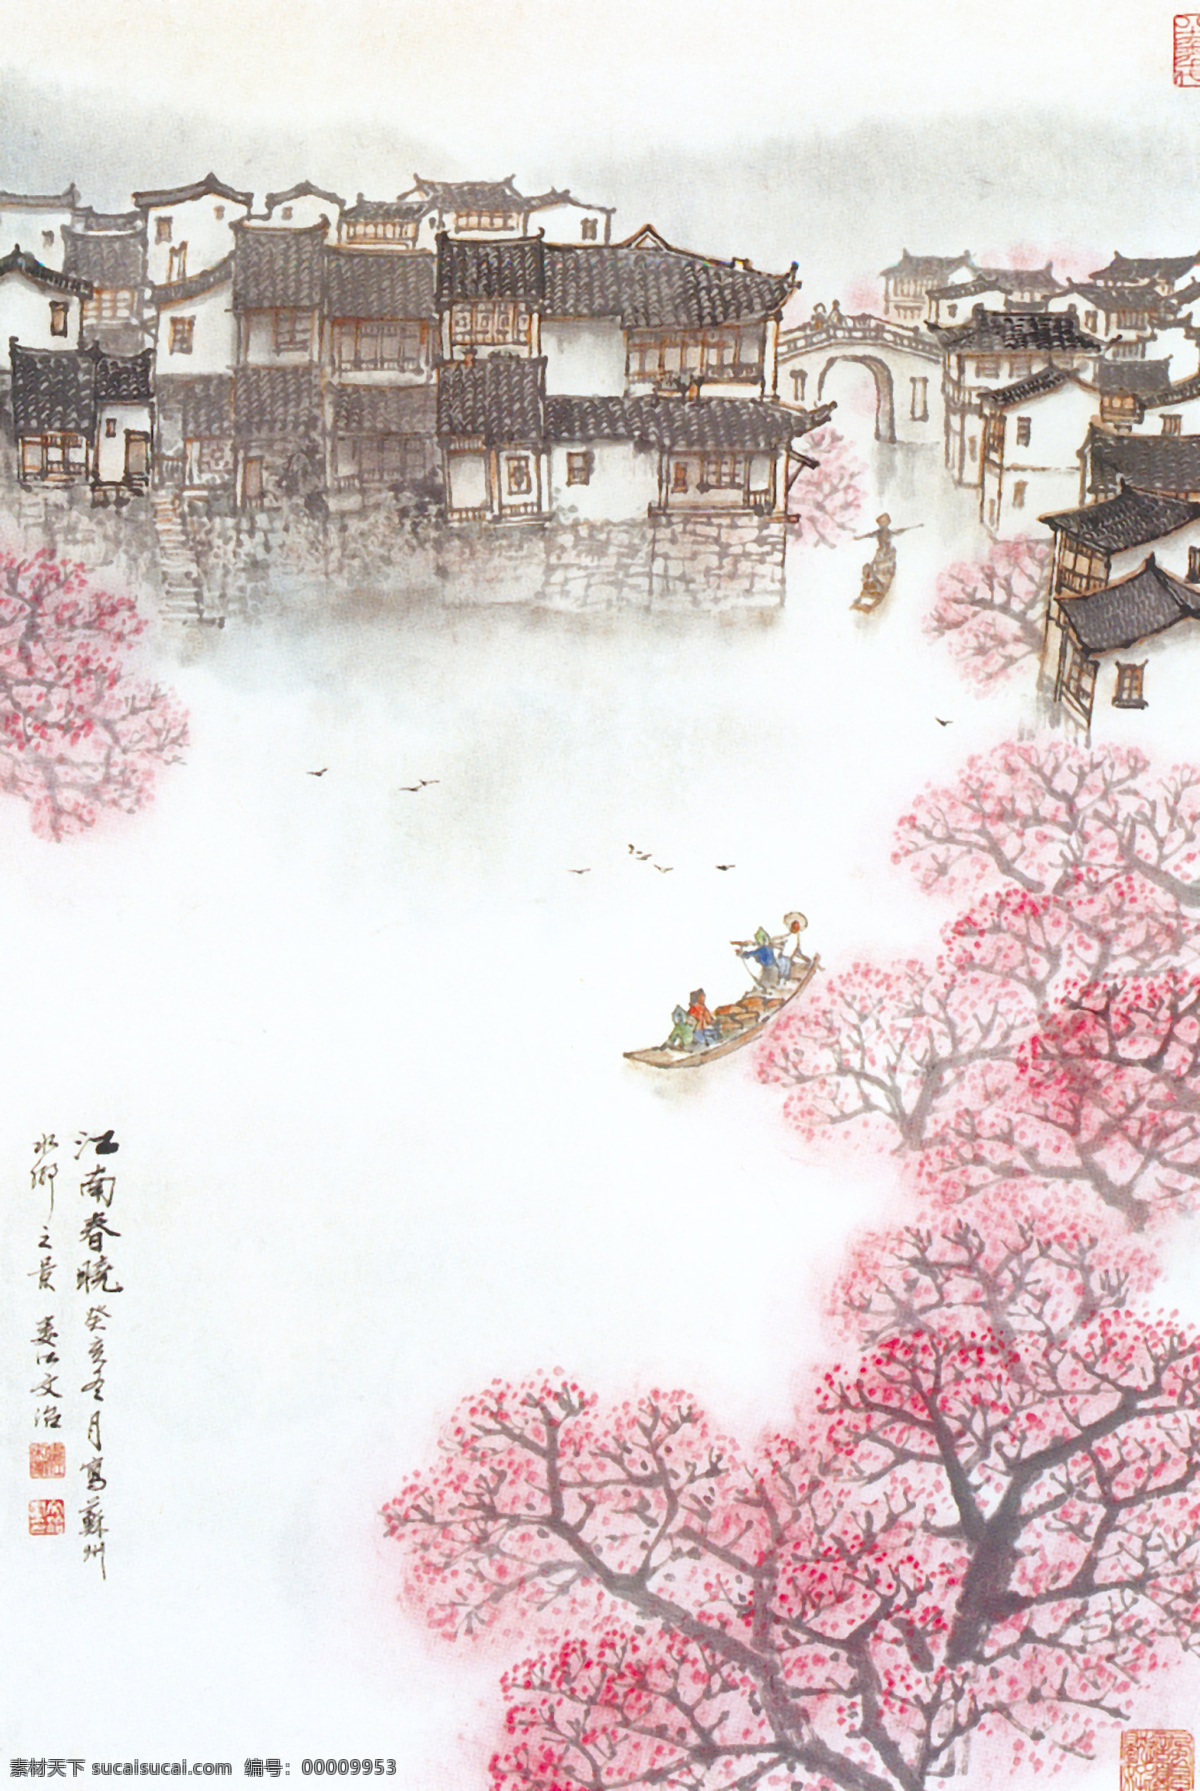 中国 现代 名画 之江 南 春晓 图 设计图库 文化艺术 绘画书法